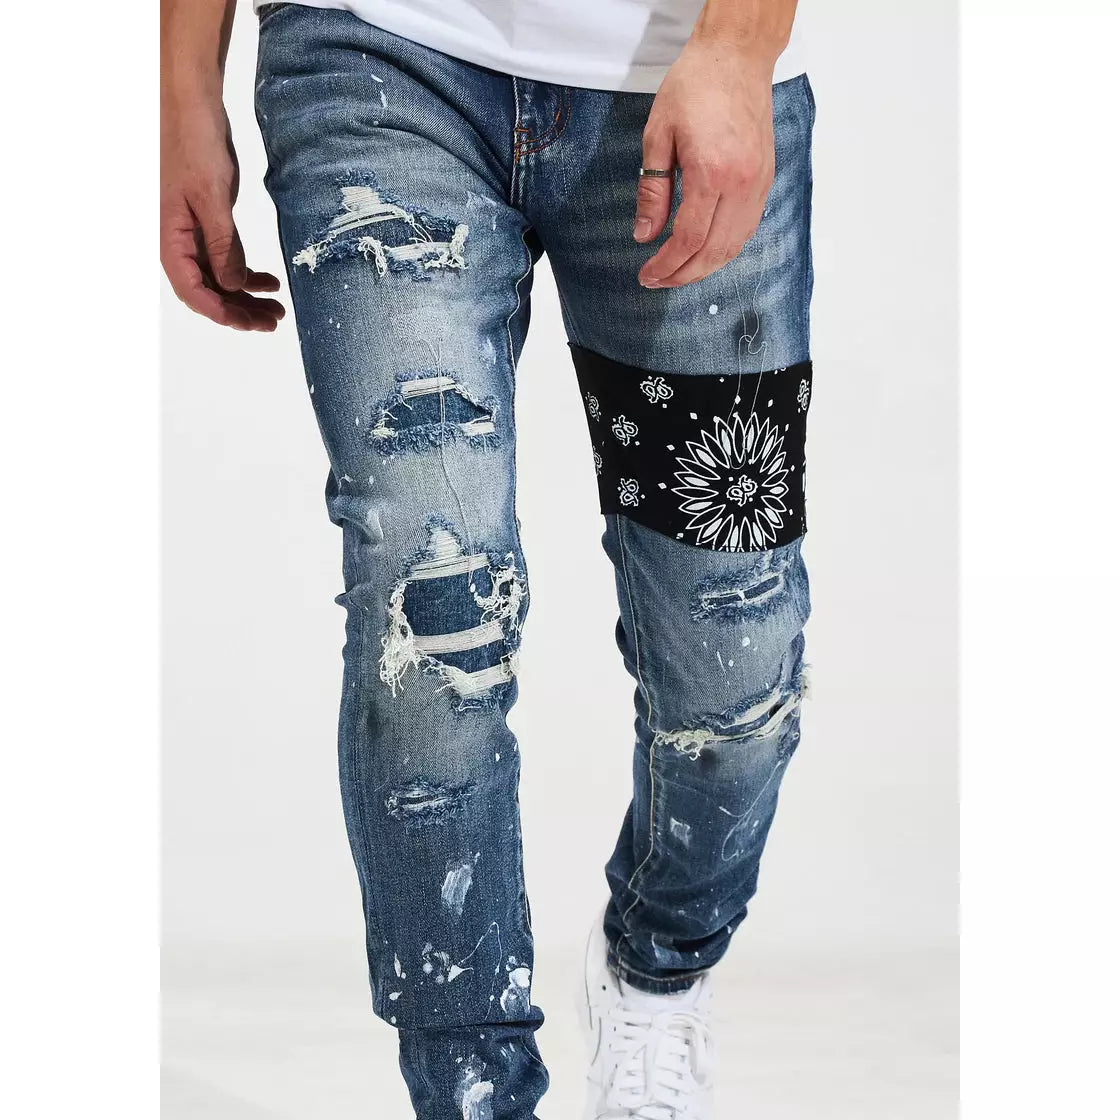 Crysp Denim Castor Blue Patchwork Denim Jeans (CRYSPF121-115)